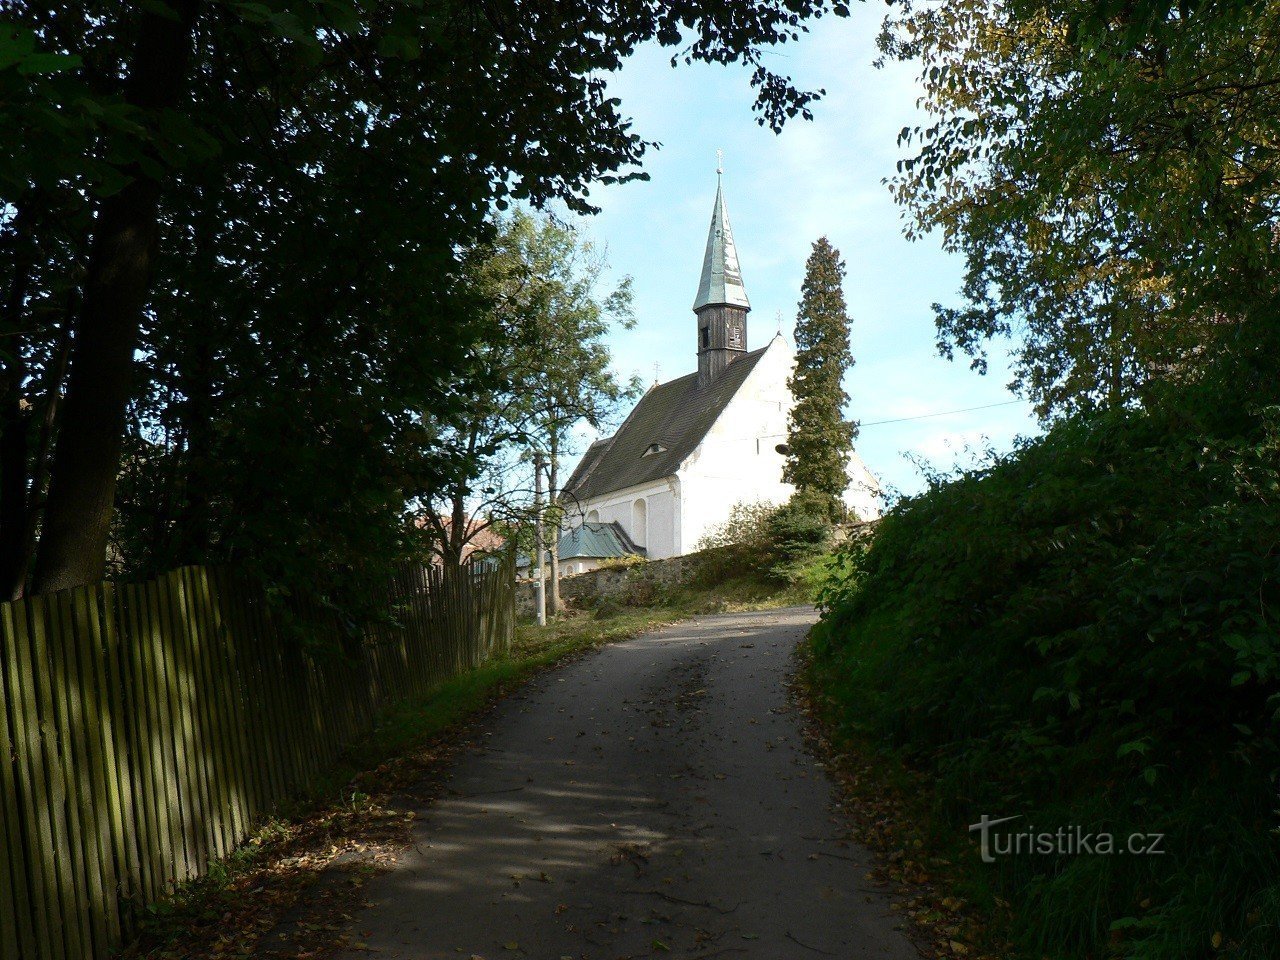 Деревня, церковь св. Лоуренс